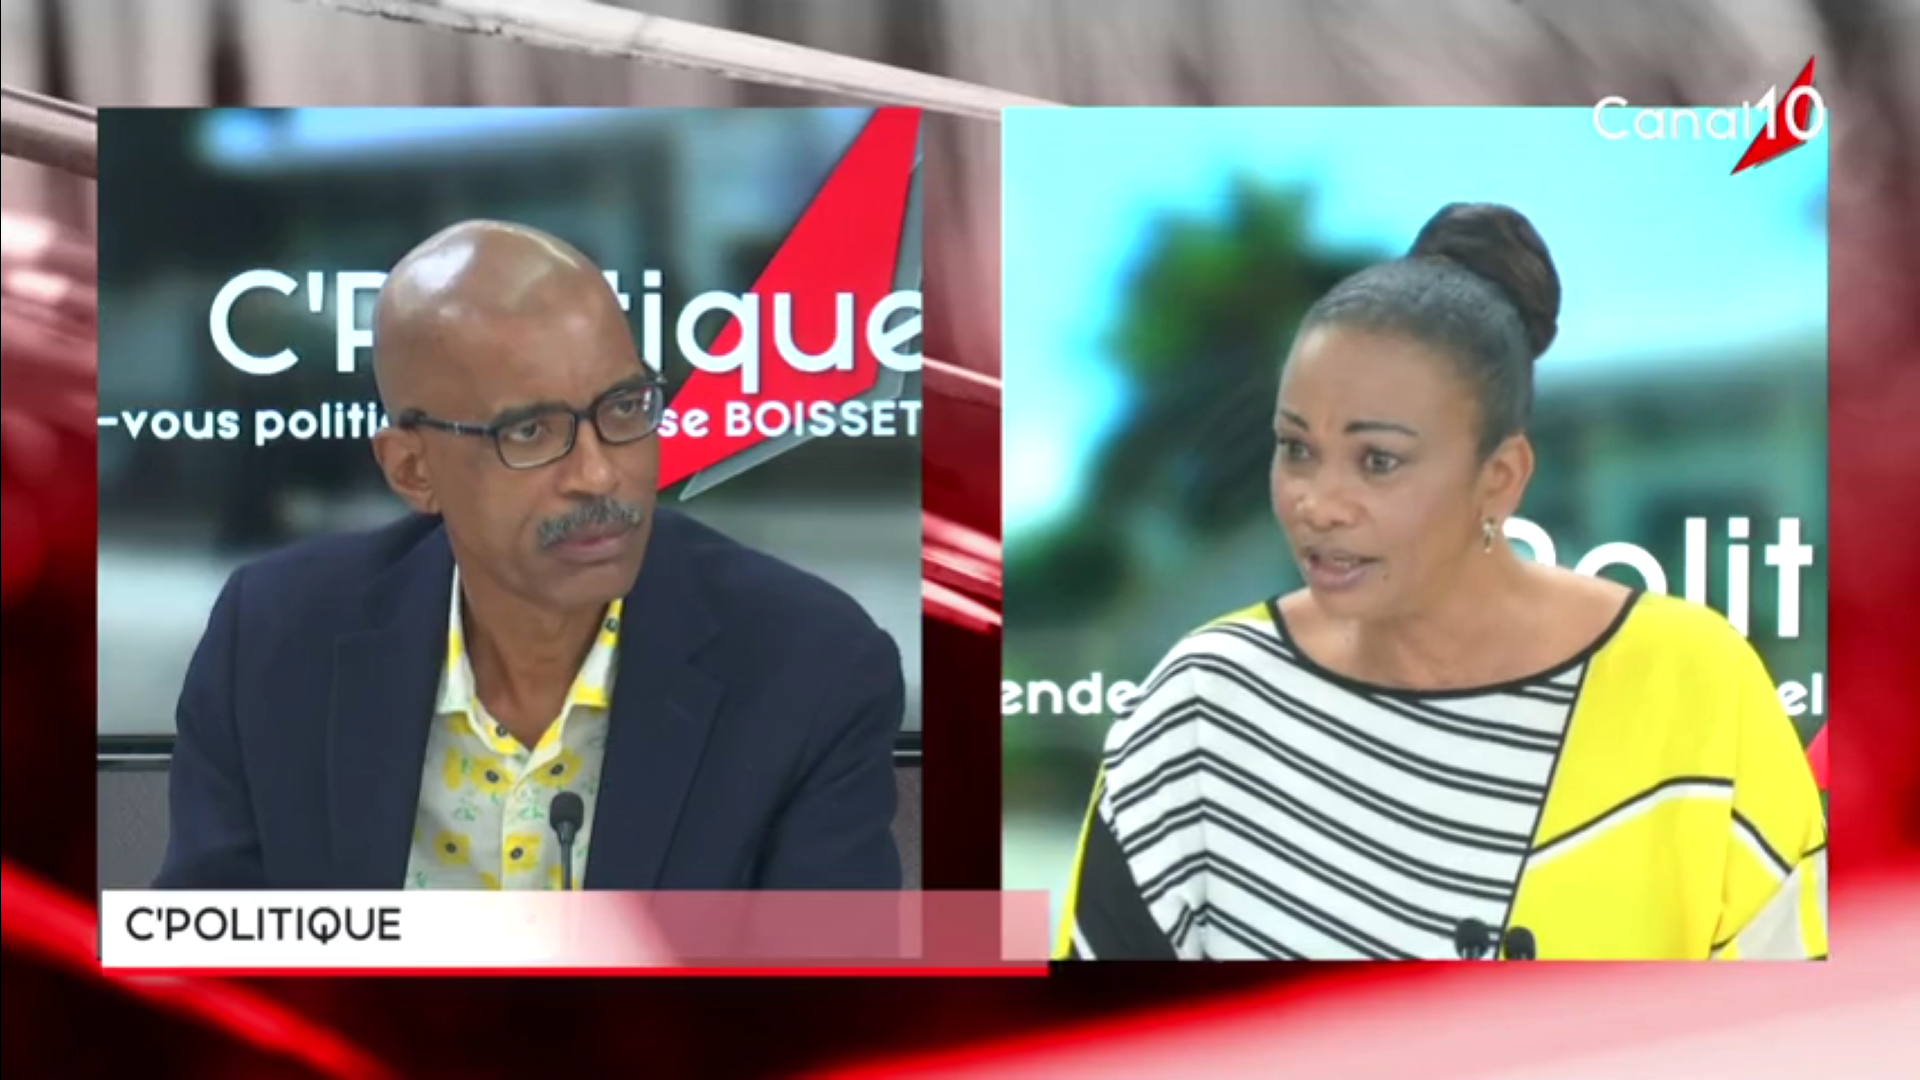 [Vidéo] Onews Guadeloupe. Georges BOUCARD Invité de C Politique (Yvelise BOISSET)